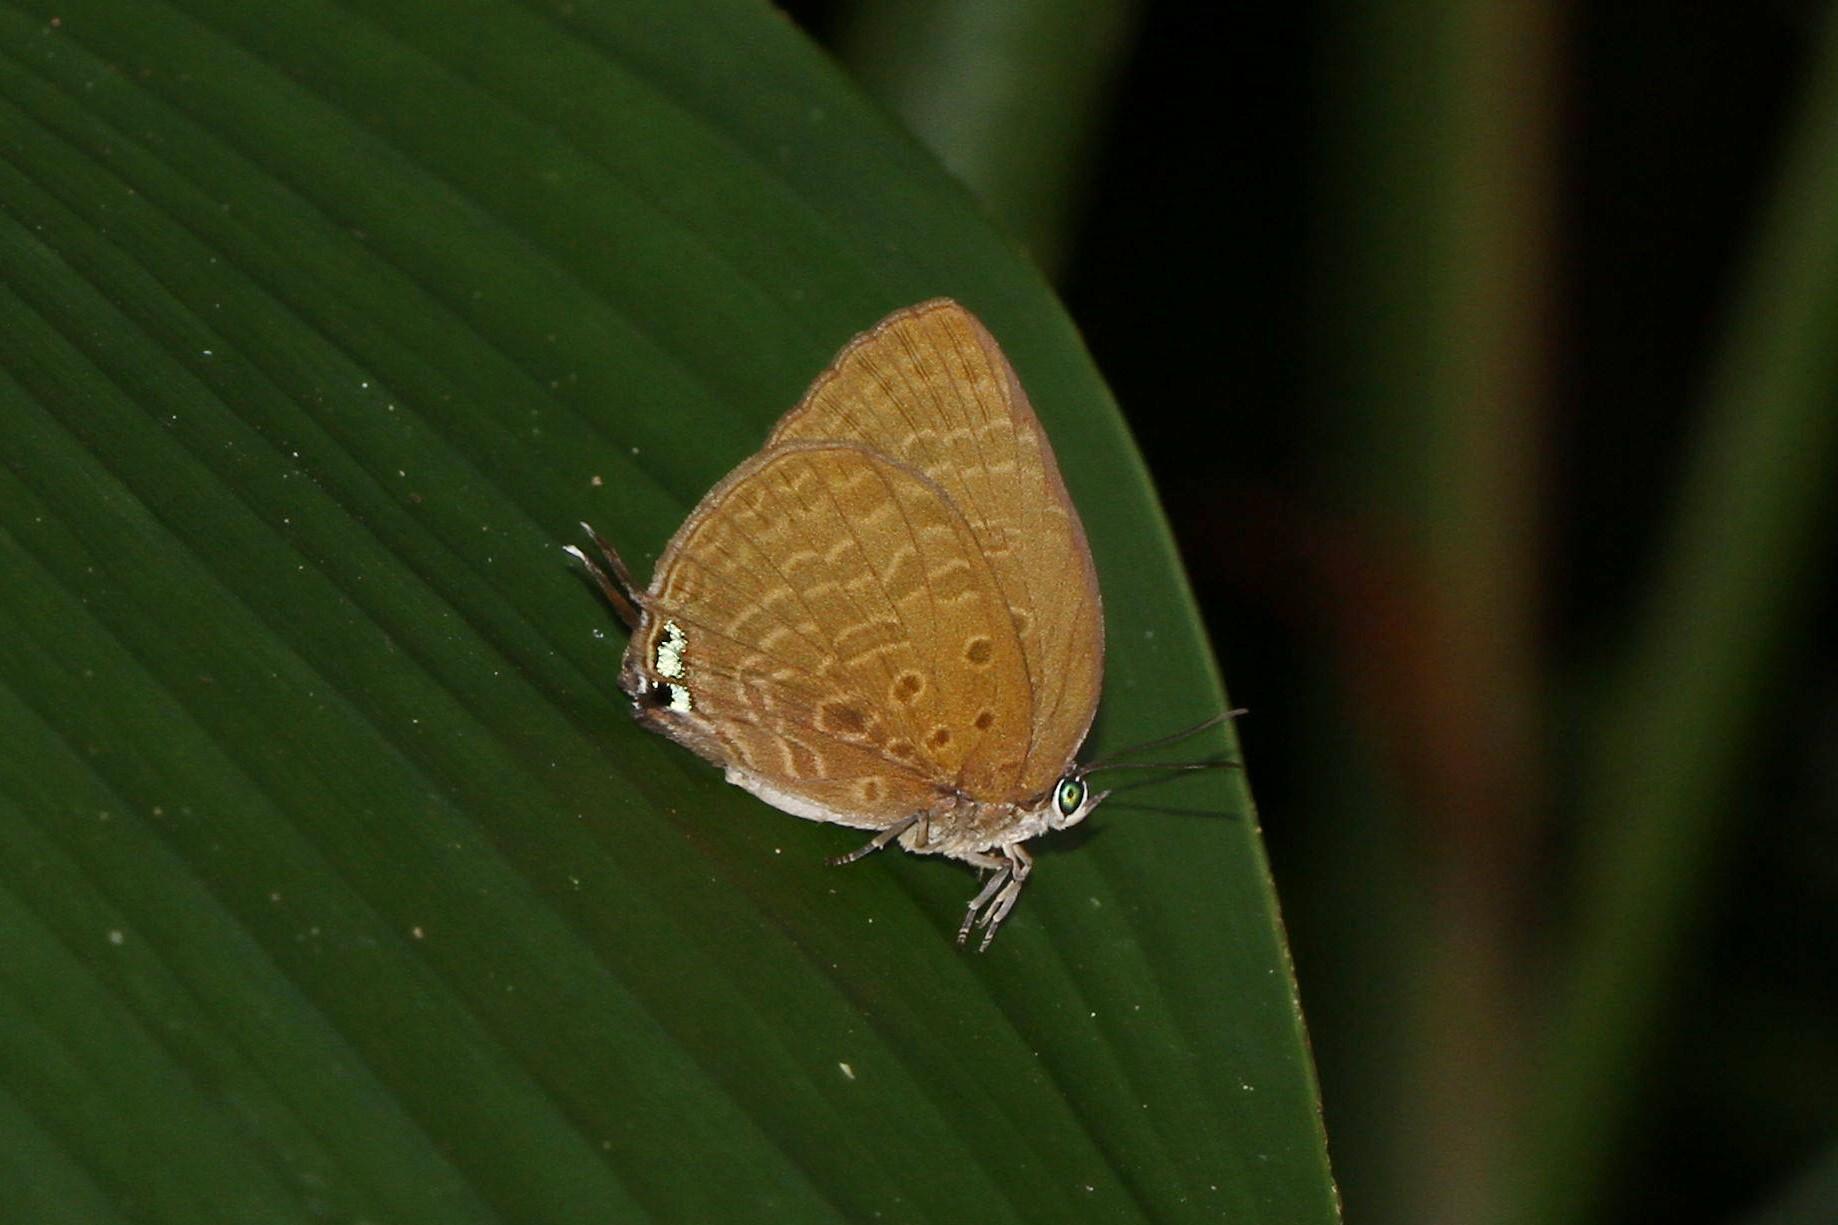 Arhopala atosia malayana : Tailed Disc Oakblue / ผีเสื้อฟ้าไม้ก่อวาวกลางหางเดี่ยว